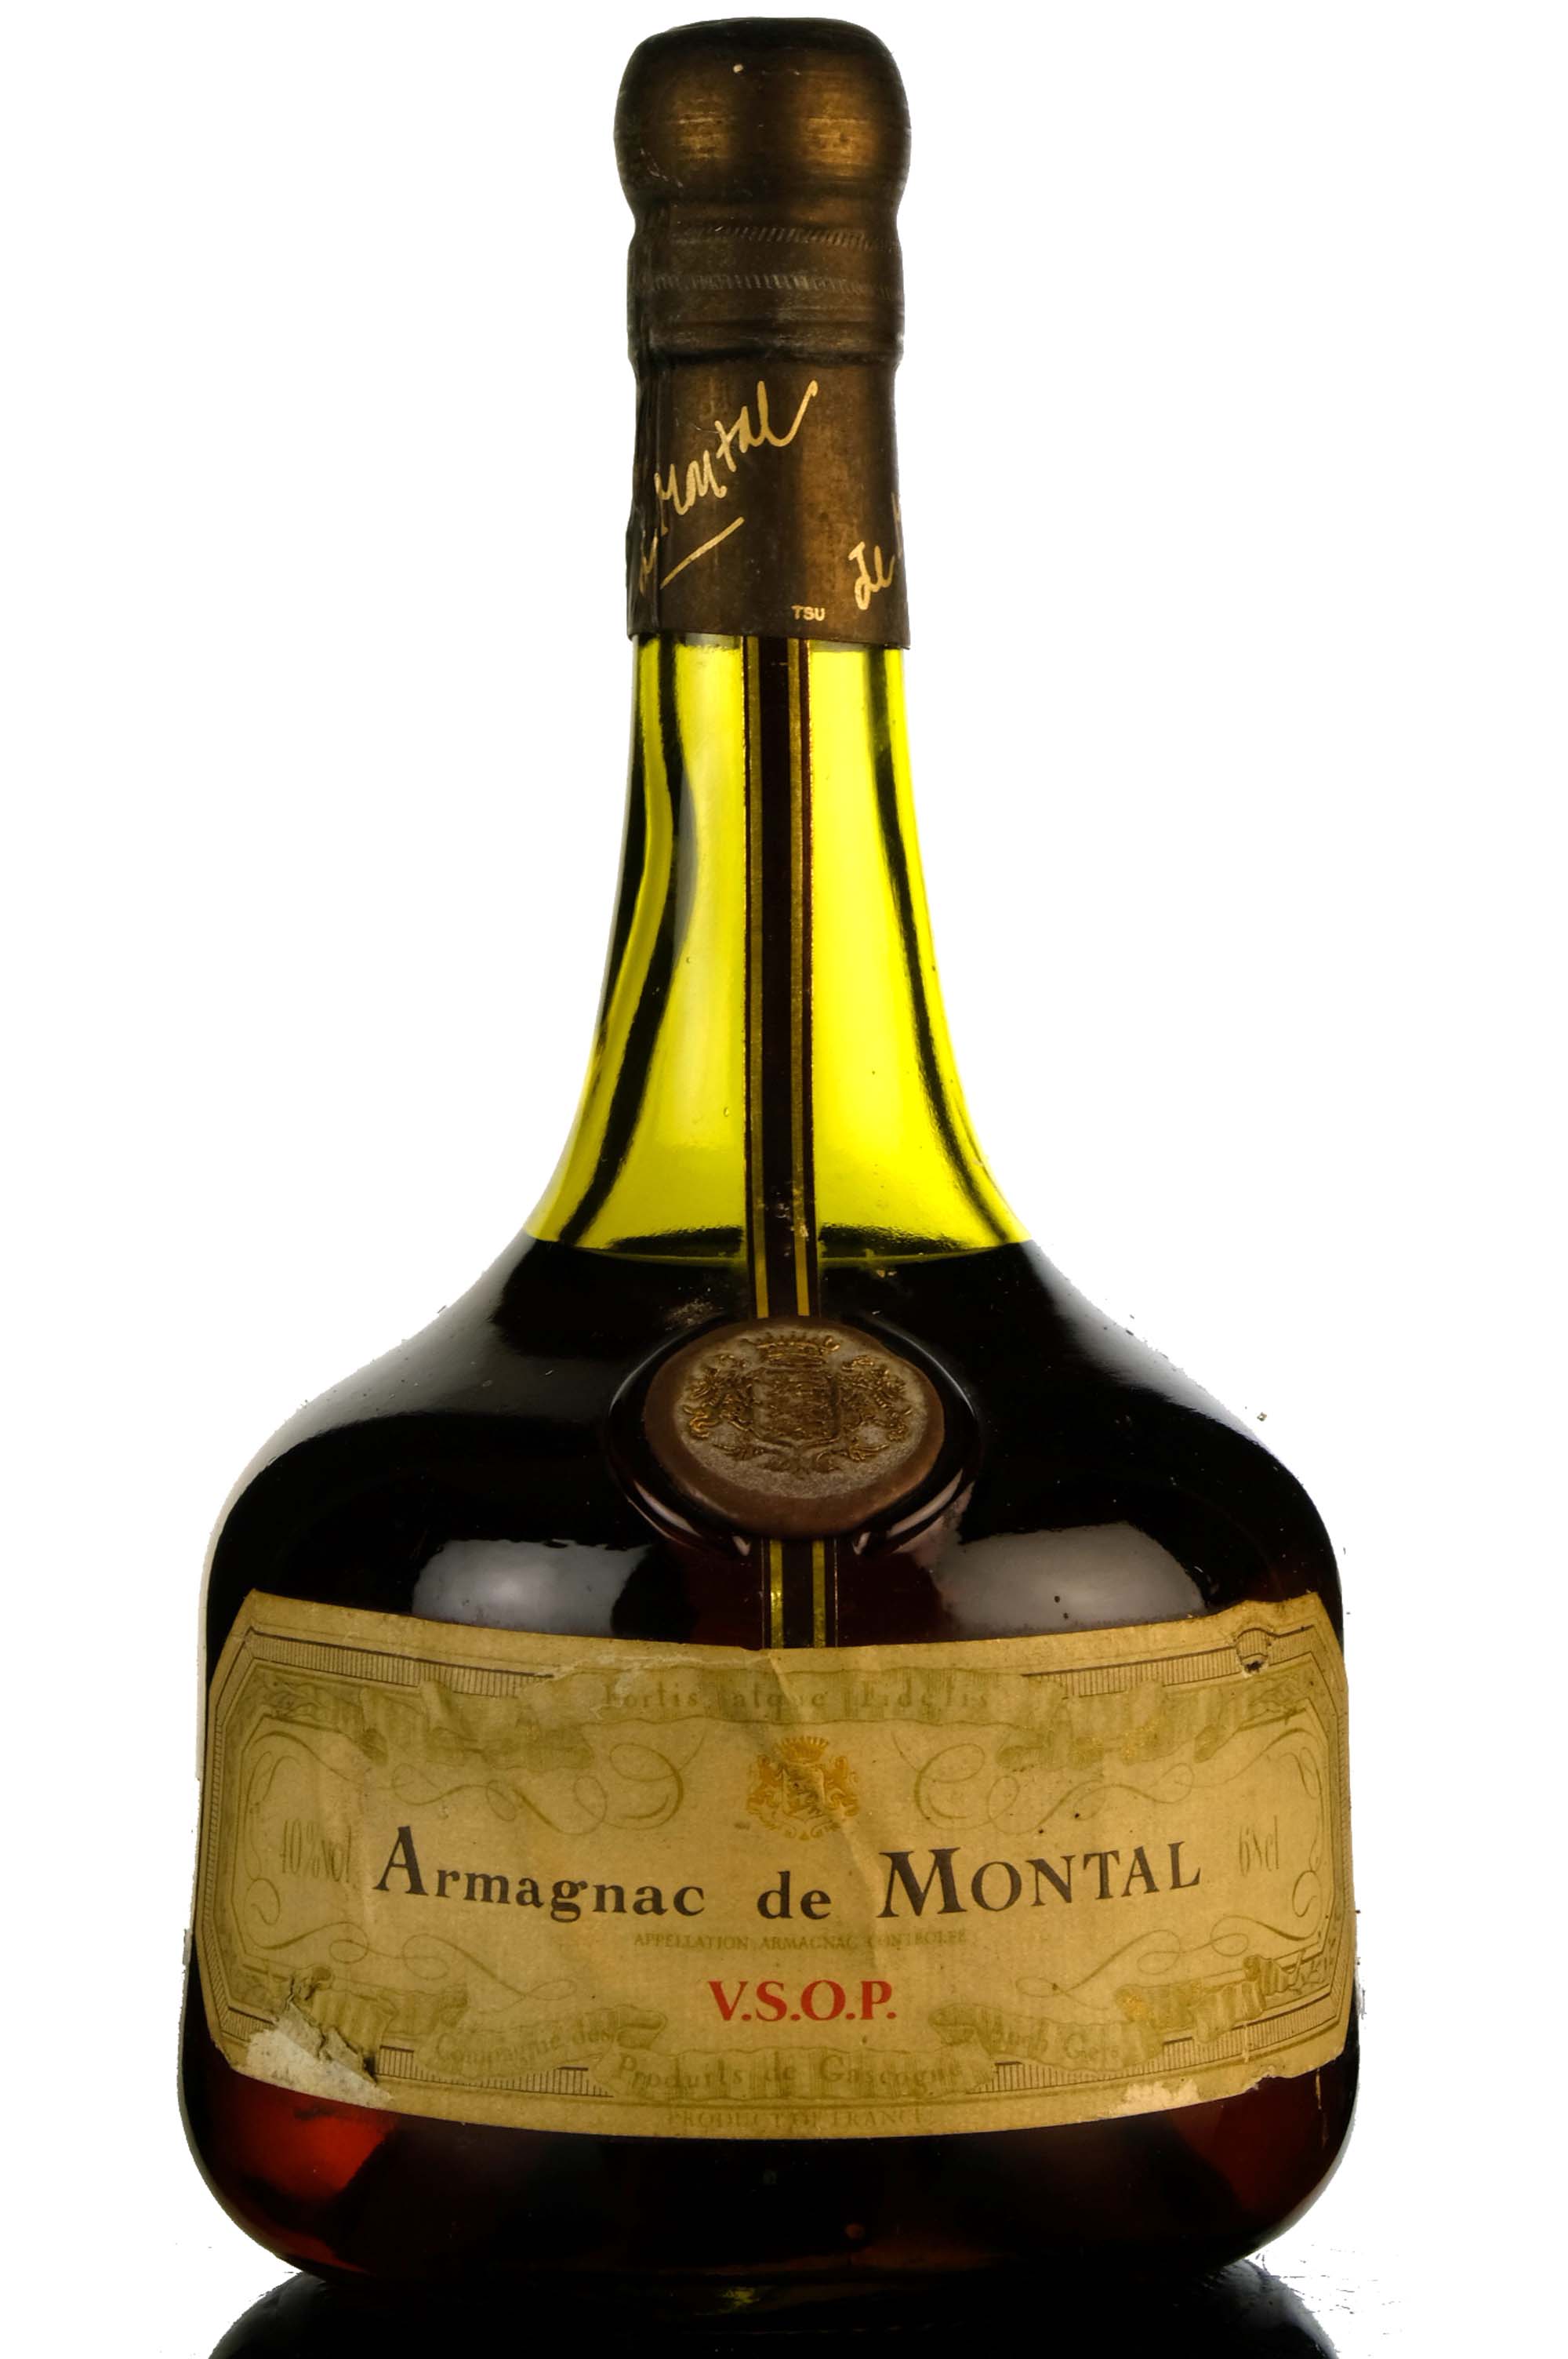 De Montal Armagnac